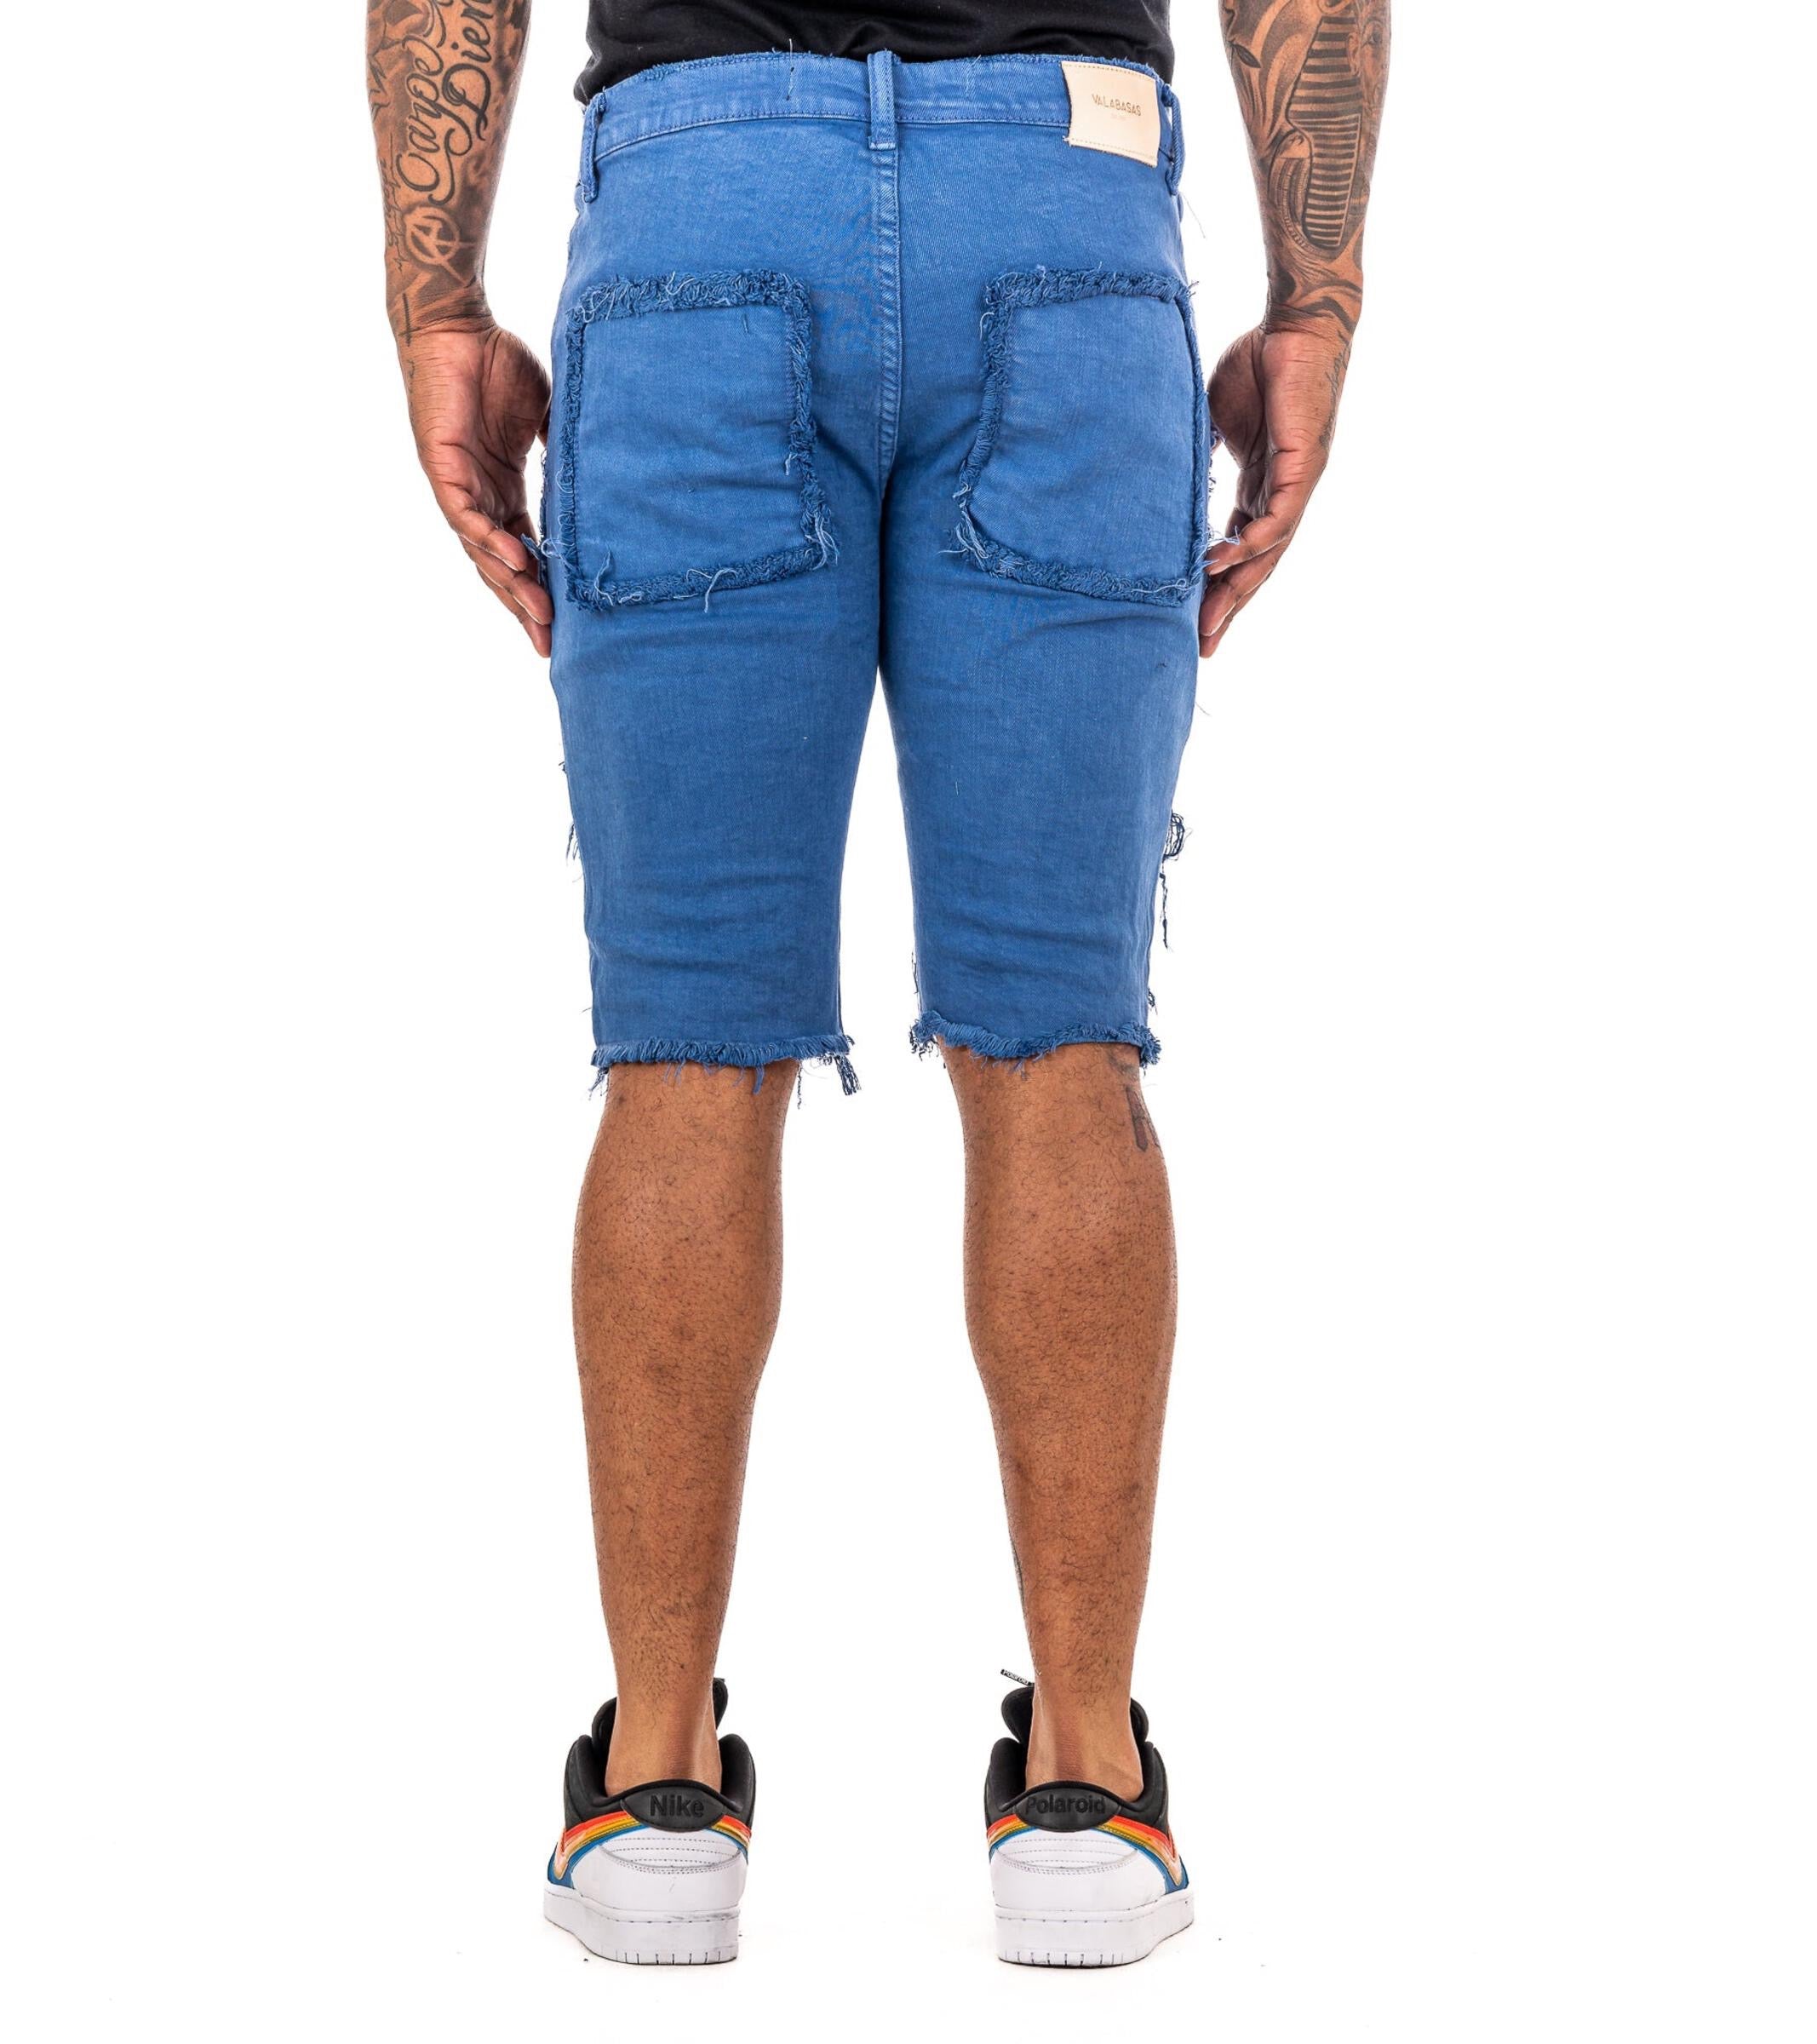 Valabasas Denim Shorts - Maui